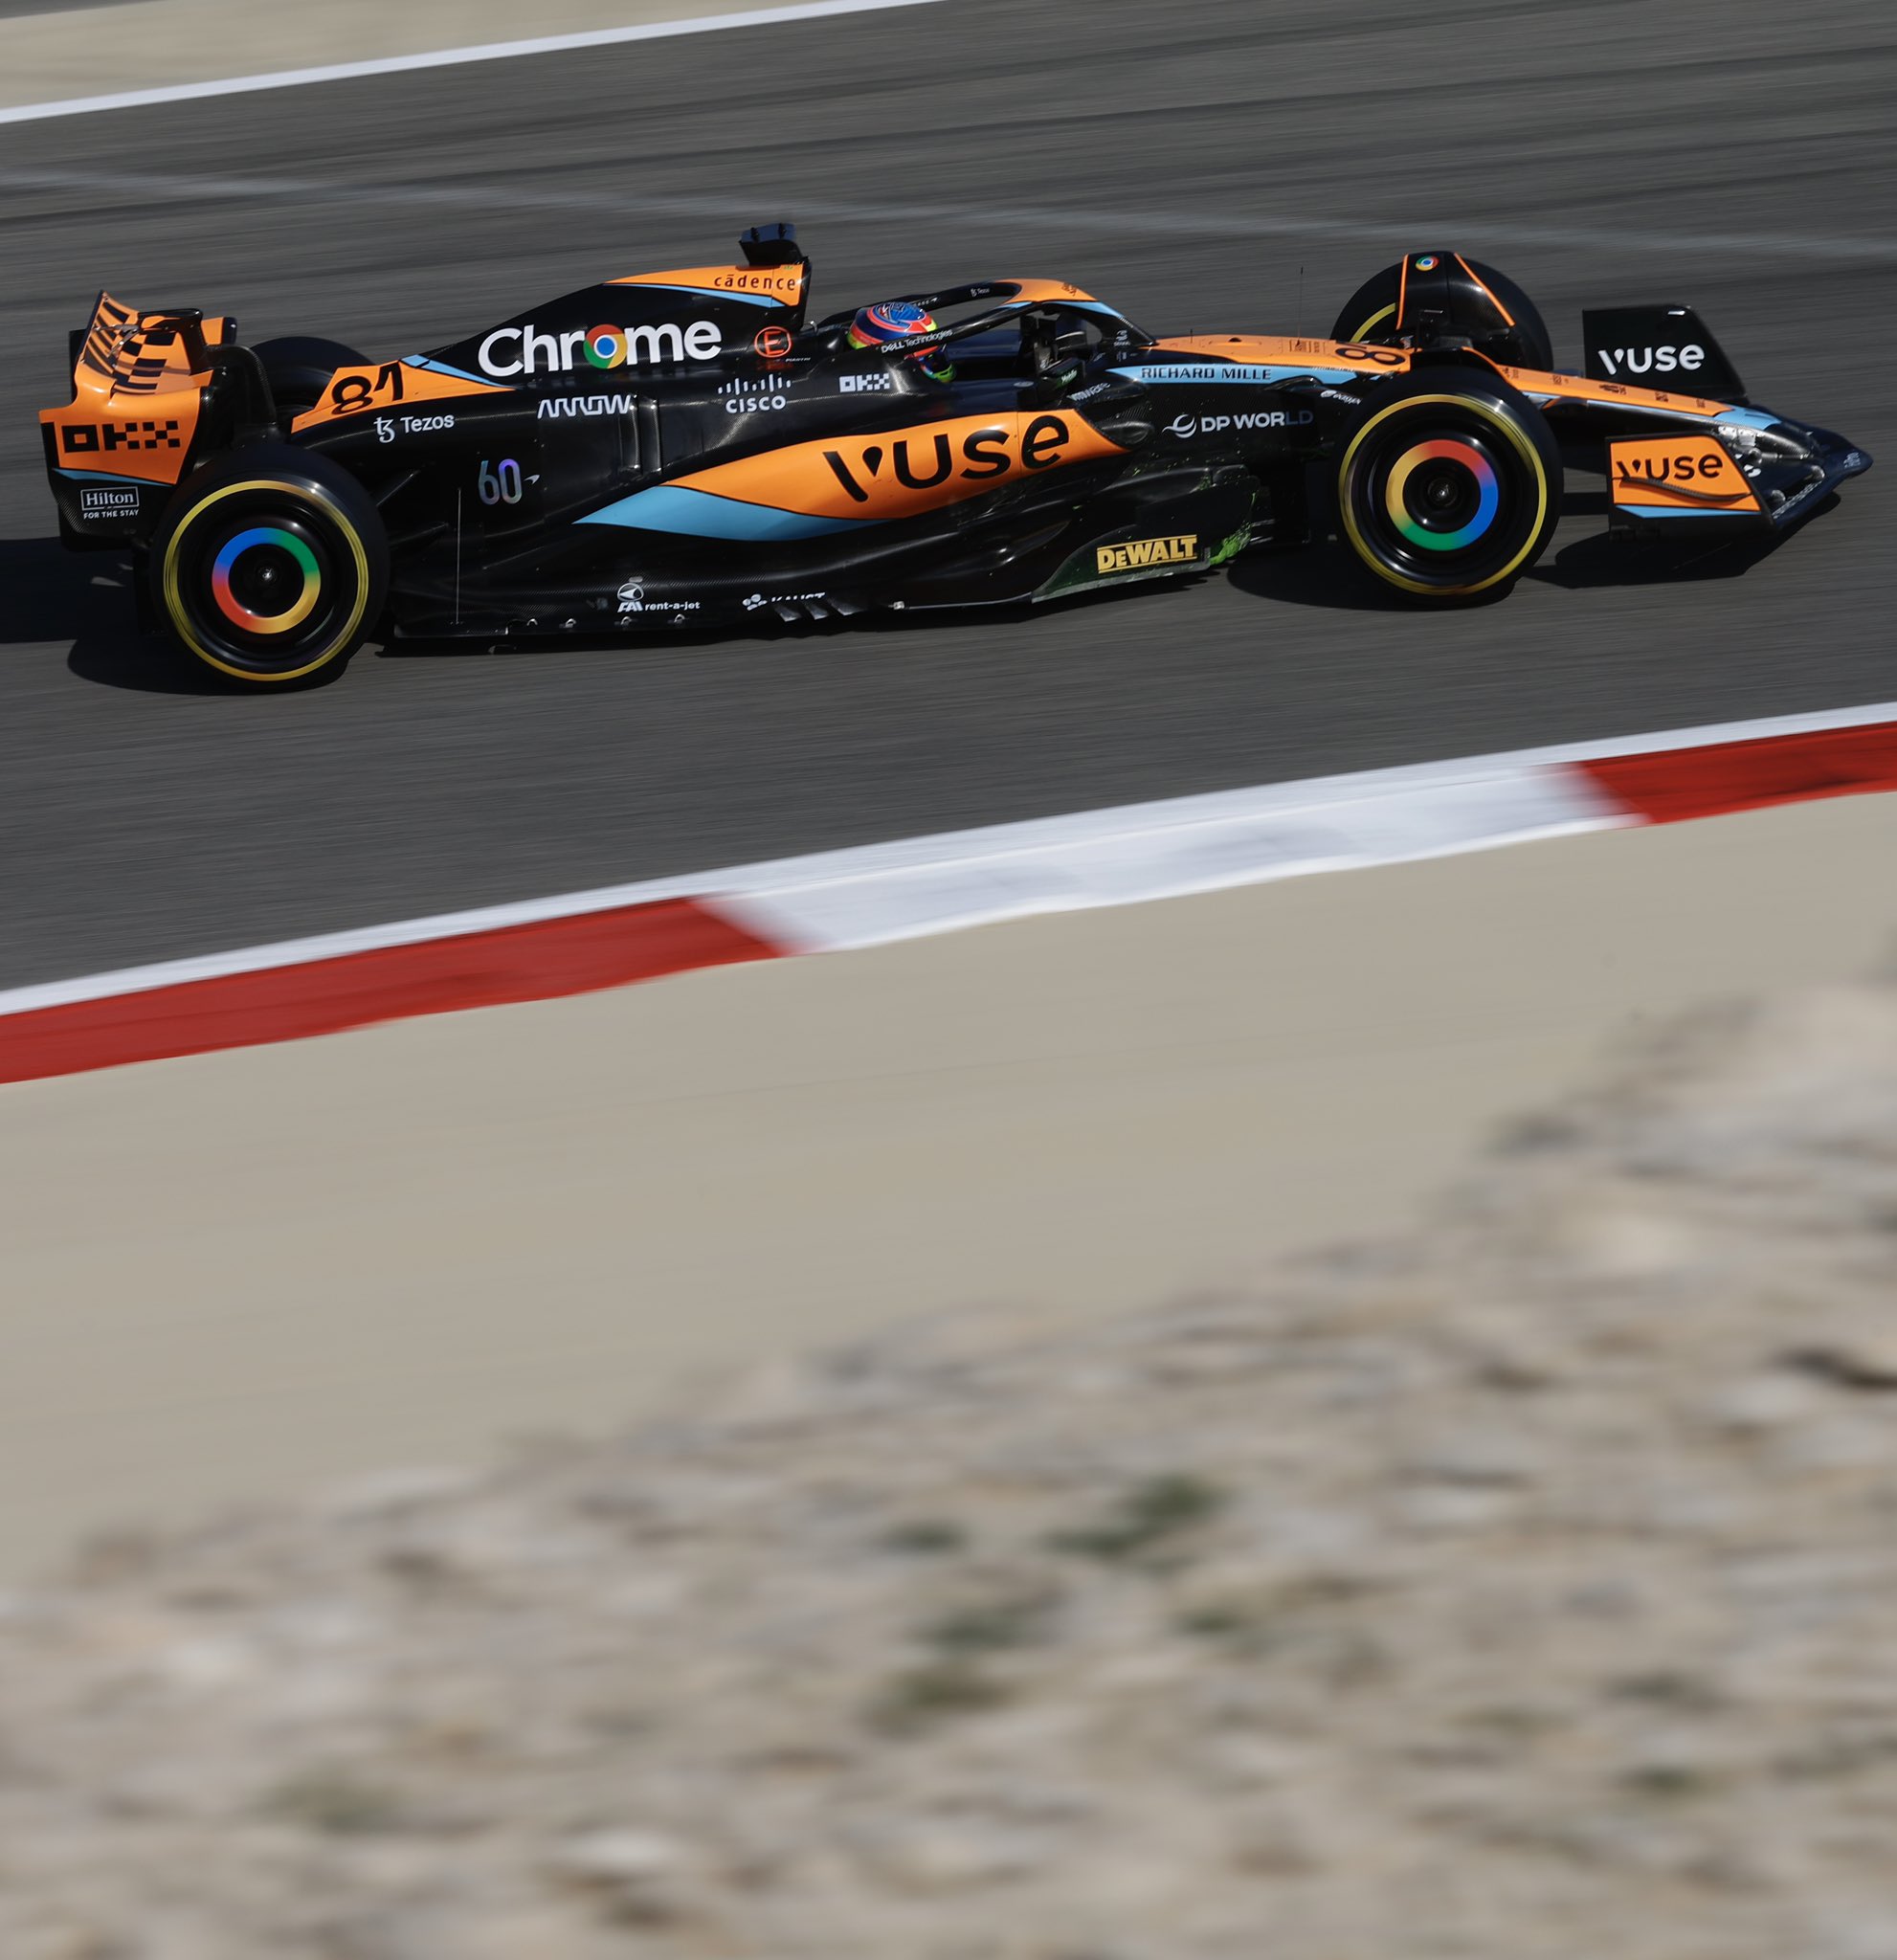 Viernes en Baréin – McLaren: jornada de adaptación para el equipo